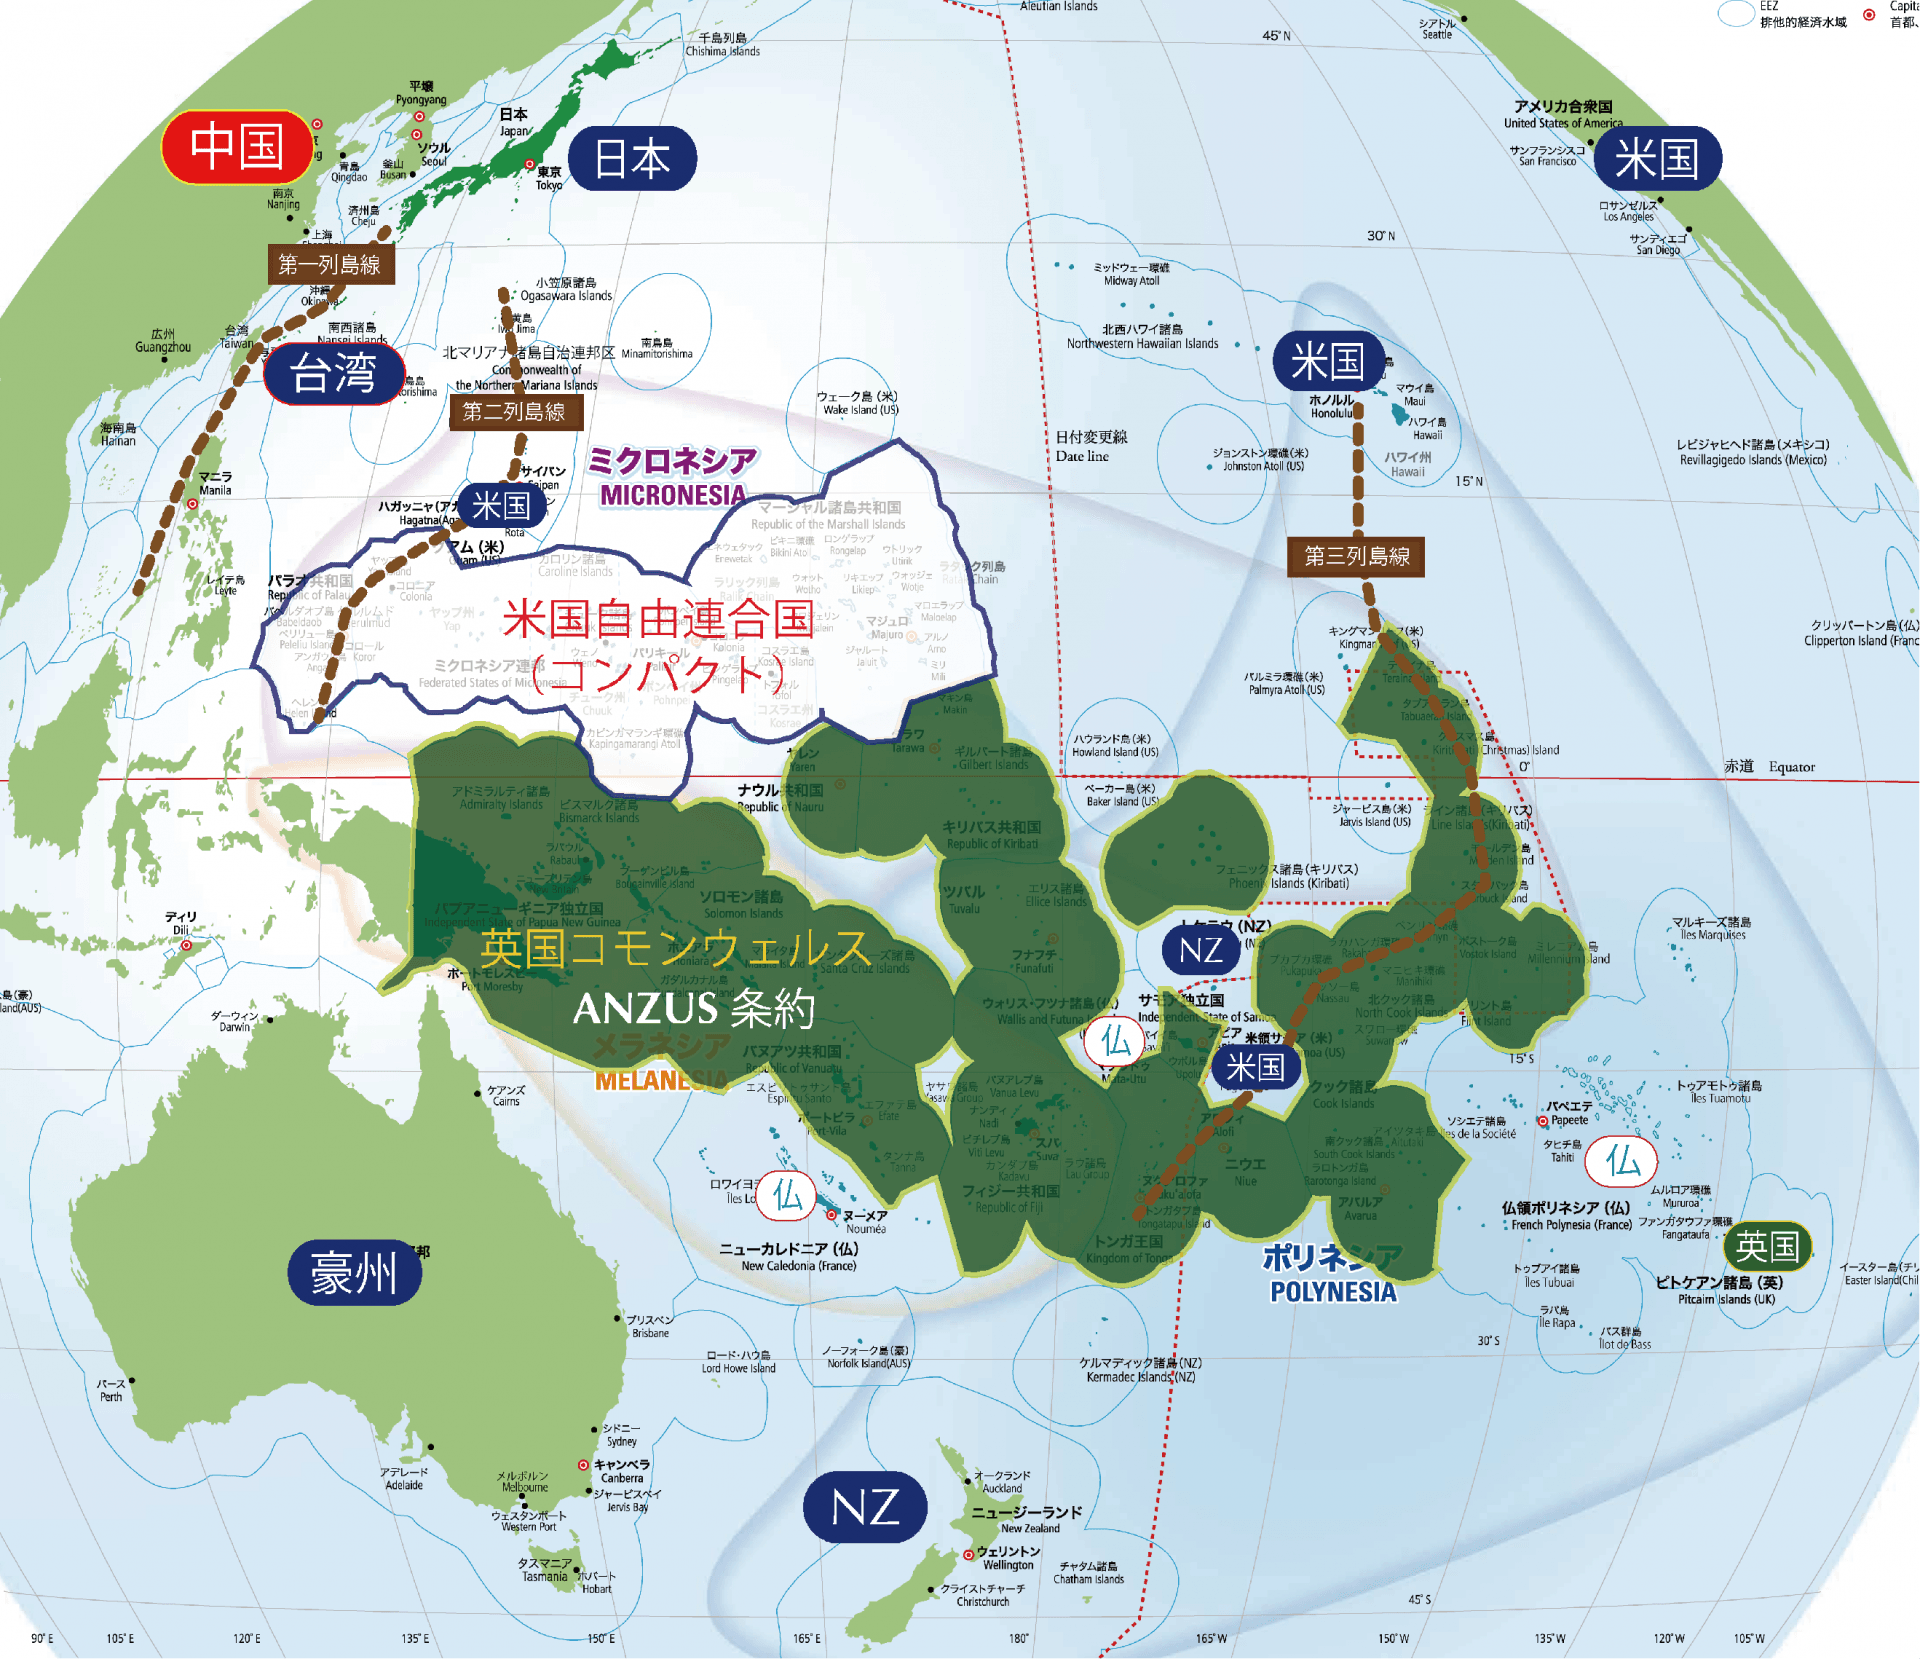 太平洋島嶼地域の伝統的安全保障枠組み（笹川平和財団太平洋マップをもとに筆者作成）